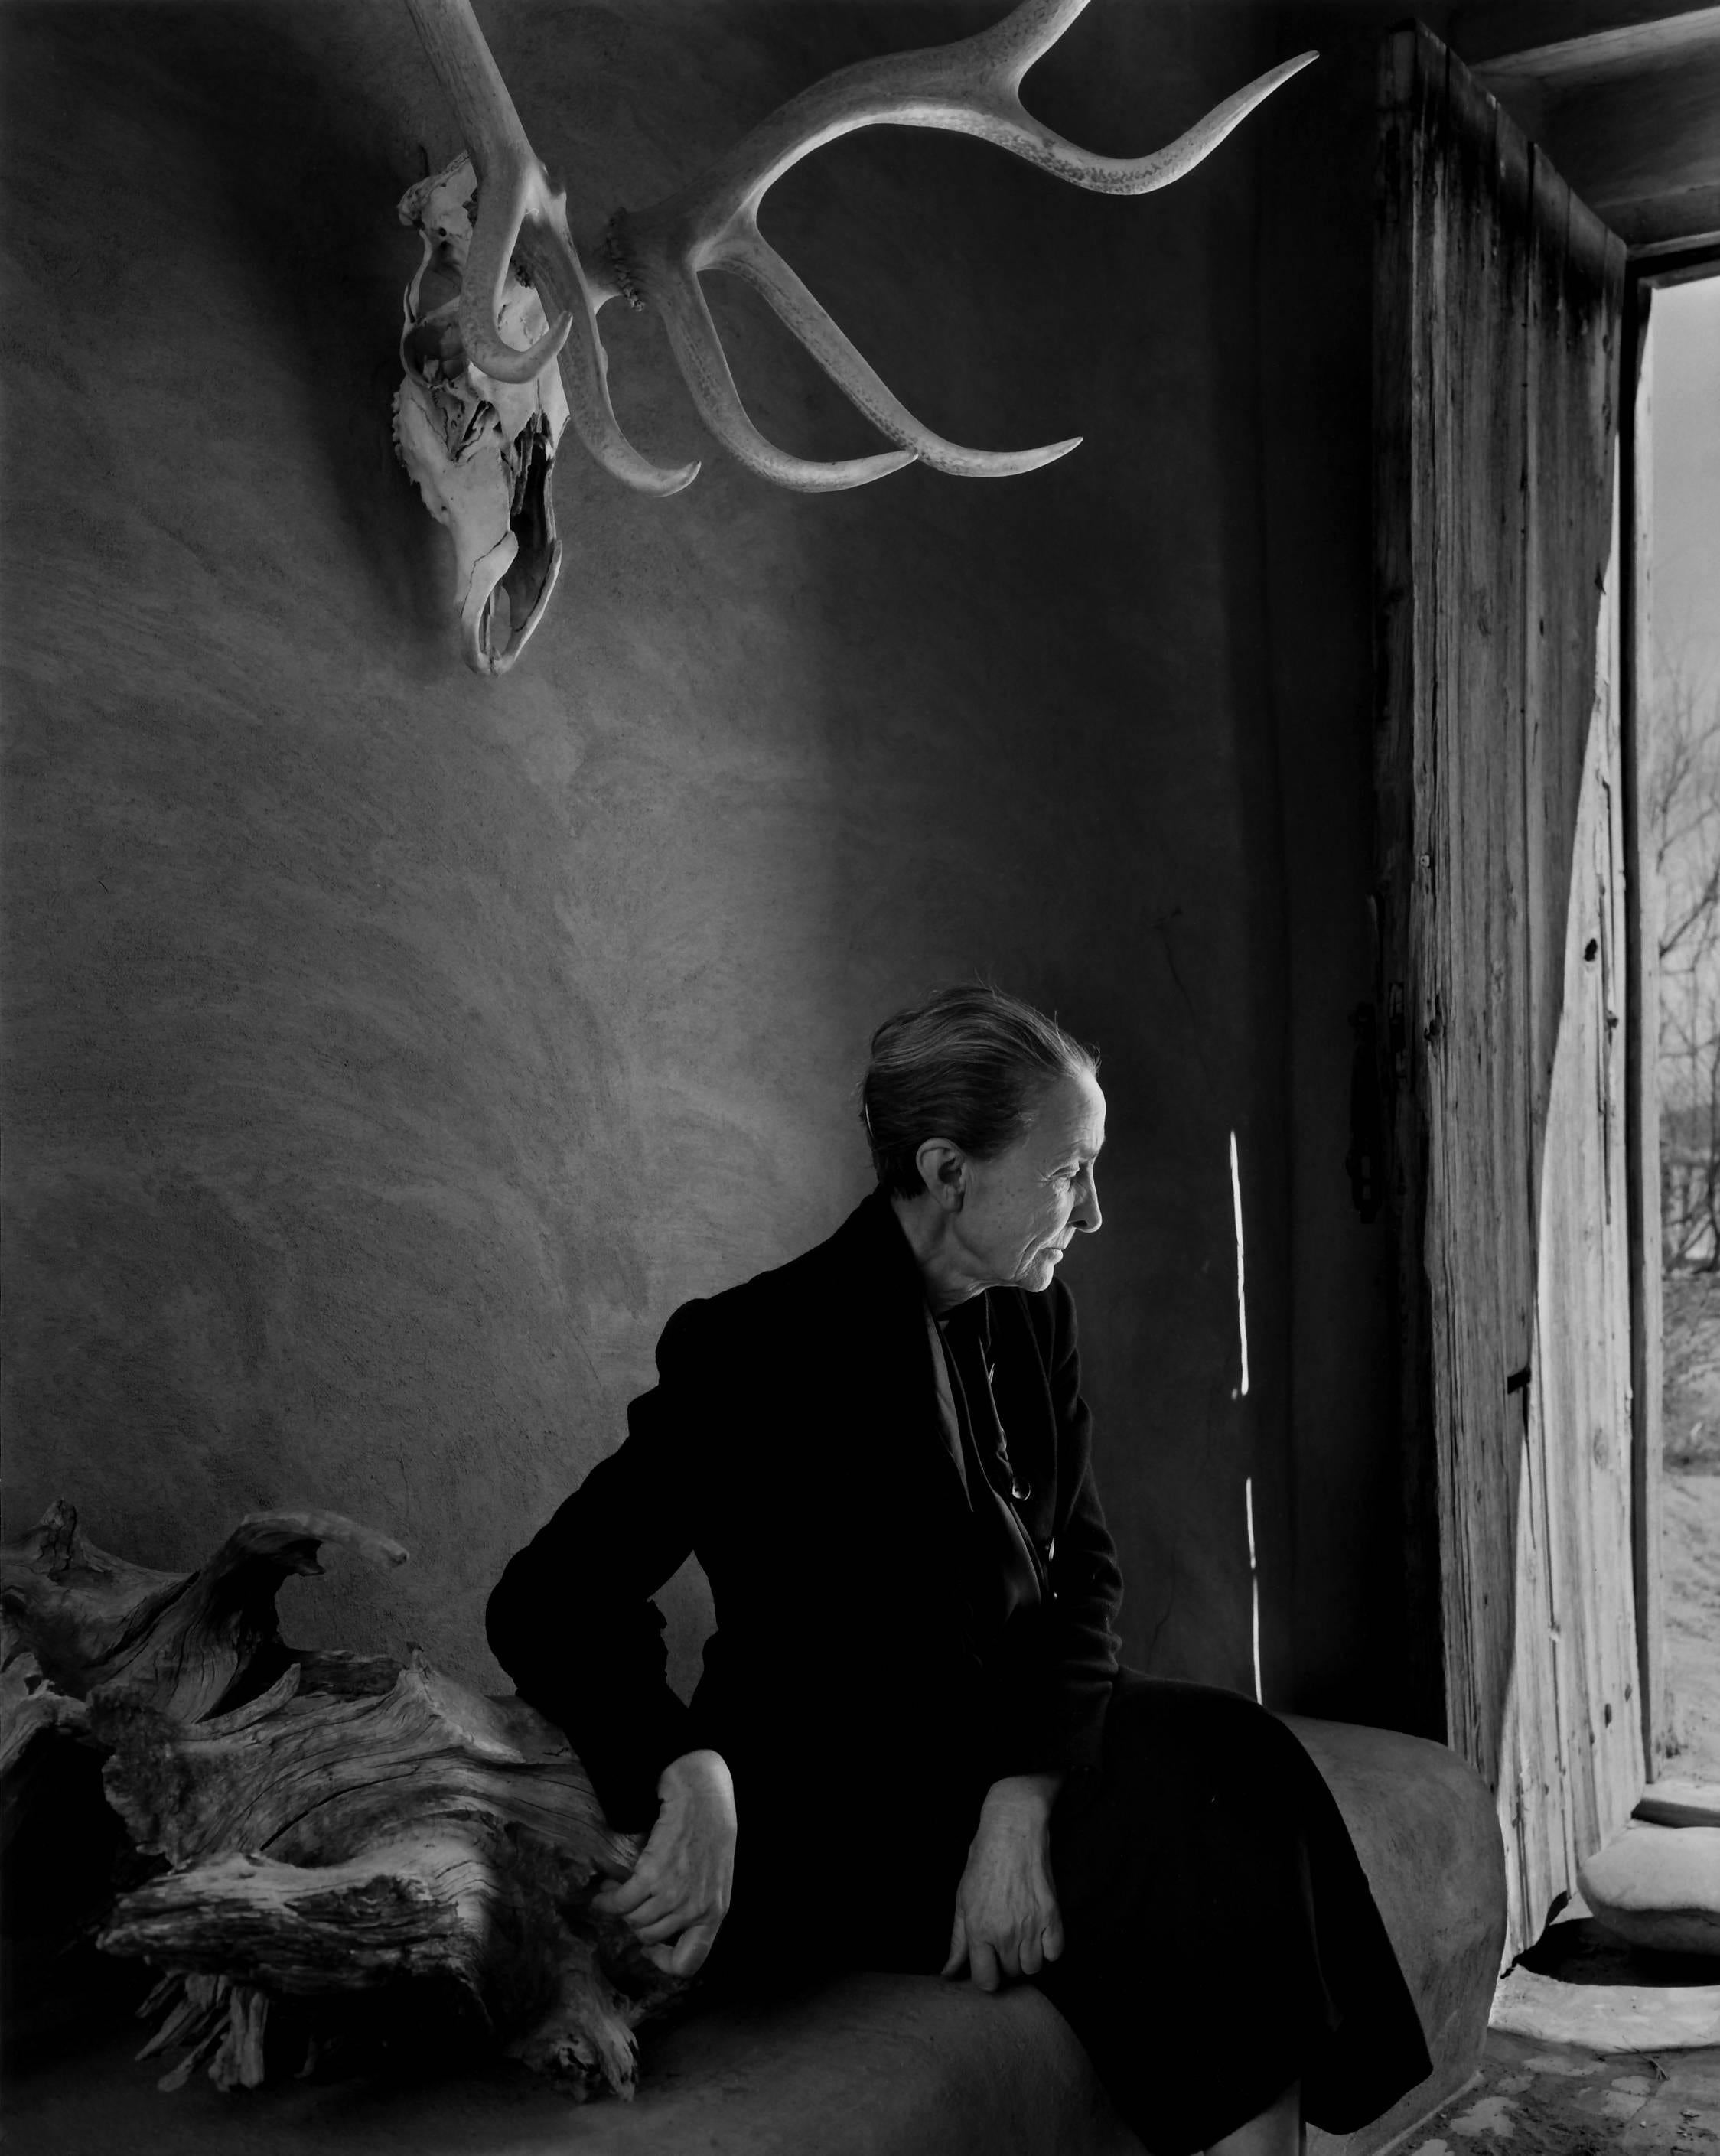 Georgia O'Keeffe, 1956 - Yousuf Karsh (Photographie de portrait)
Signé sur le support
Tirage à la gélatine argentique
20 x 16 pouces
Provenance : Succession de Yousuf Karsh, Musée des Beaux-Arts de Boston

Yousuf Karsh (1908-2002) est l'un des plus